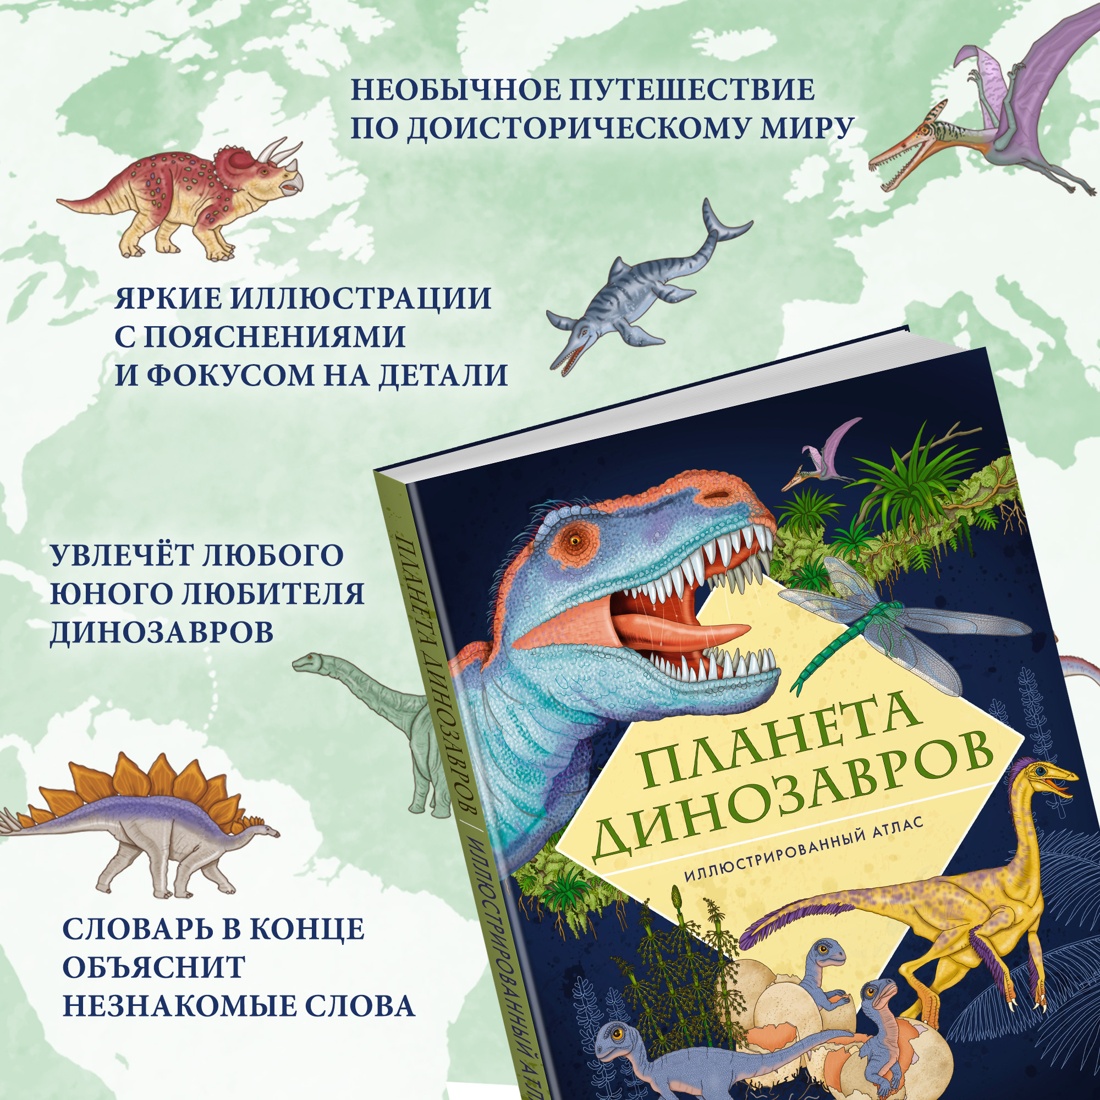 Промо материал к книге "Планета динозавров. Иллюстрированный атлас" №1